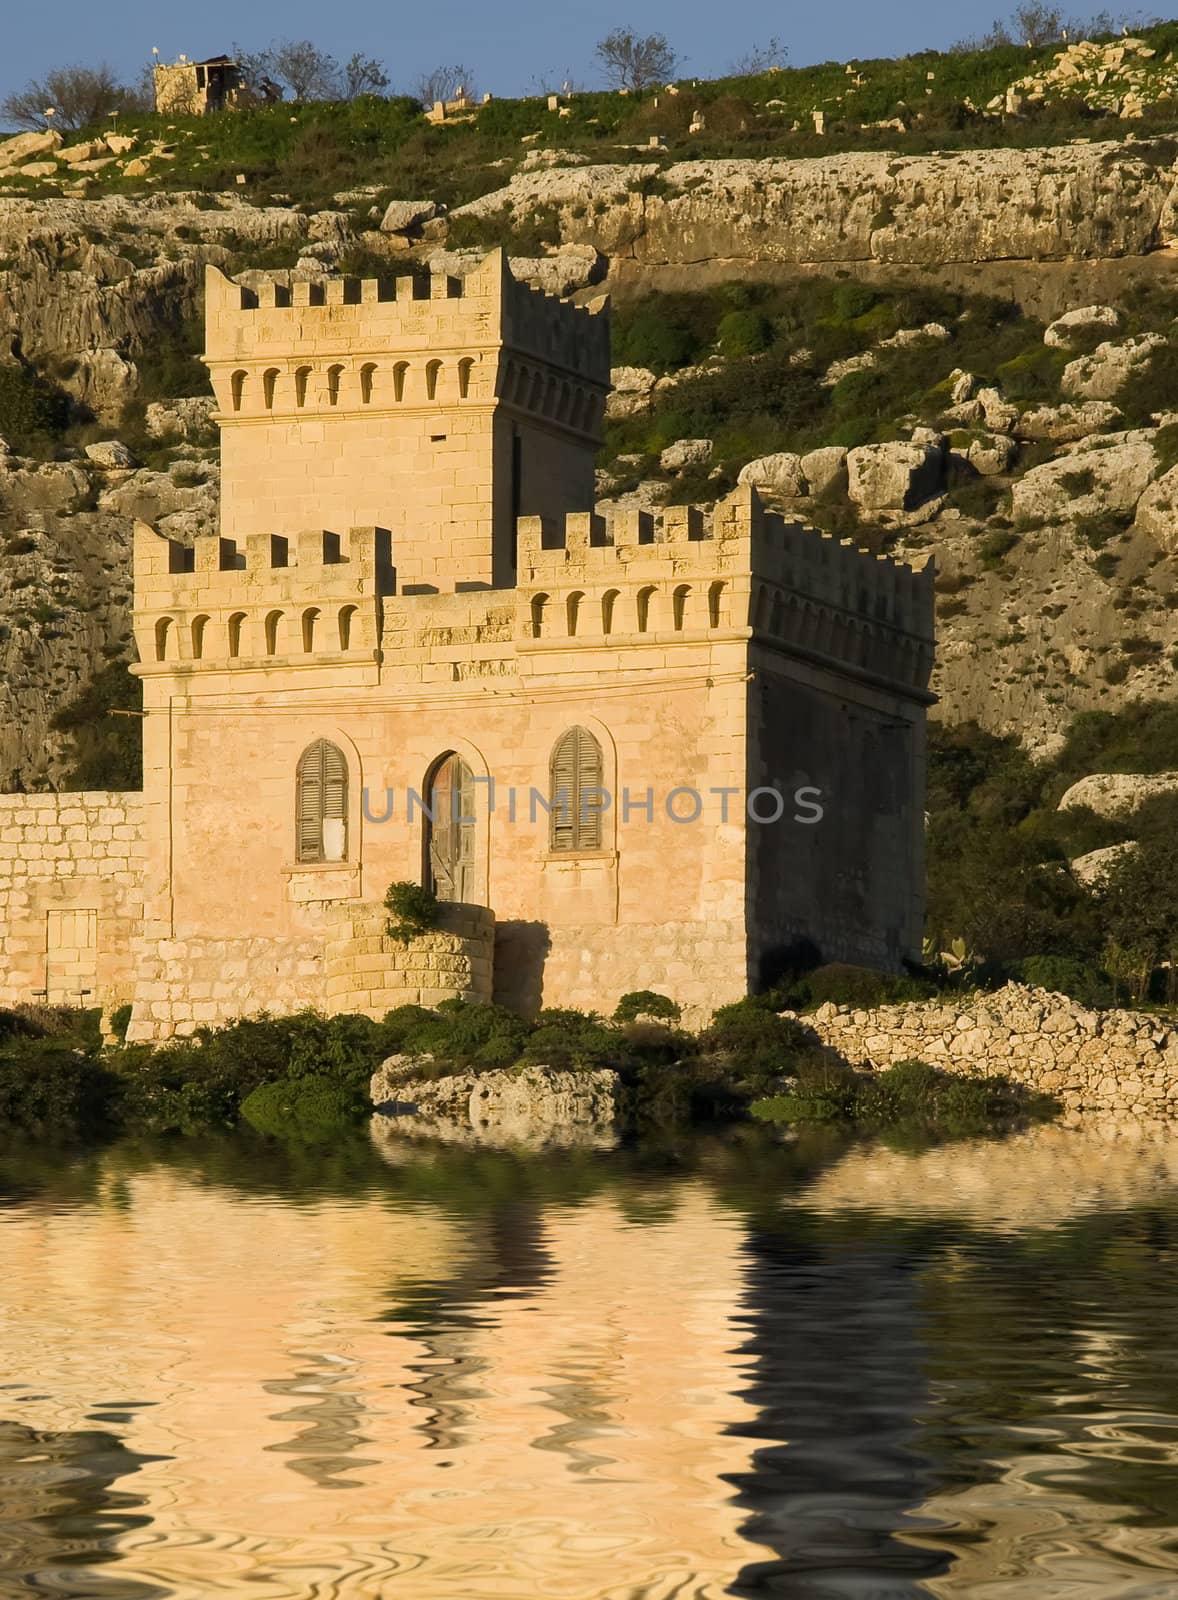 Quaint Little Castle by PhotoWorks